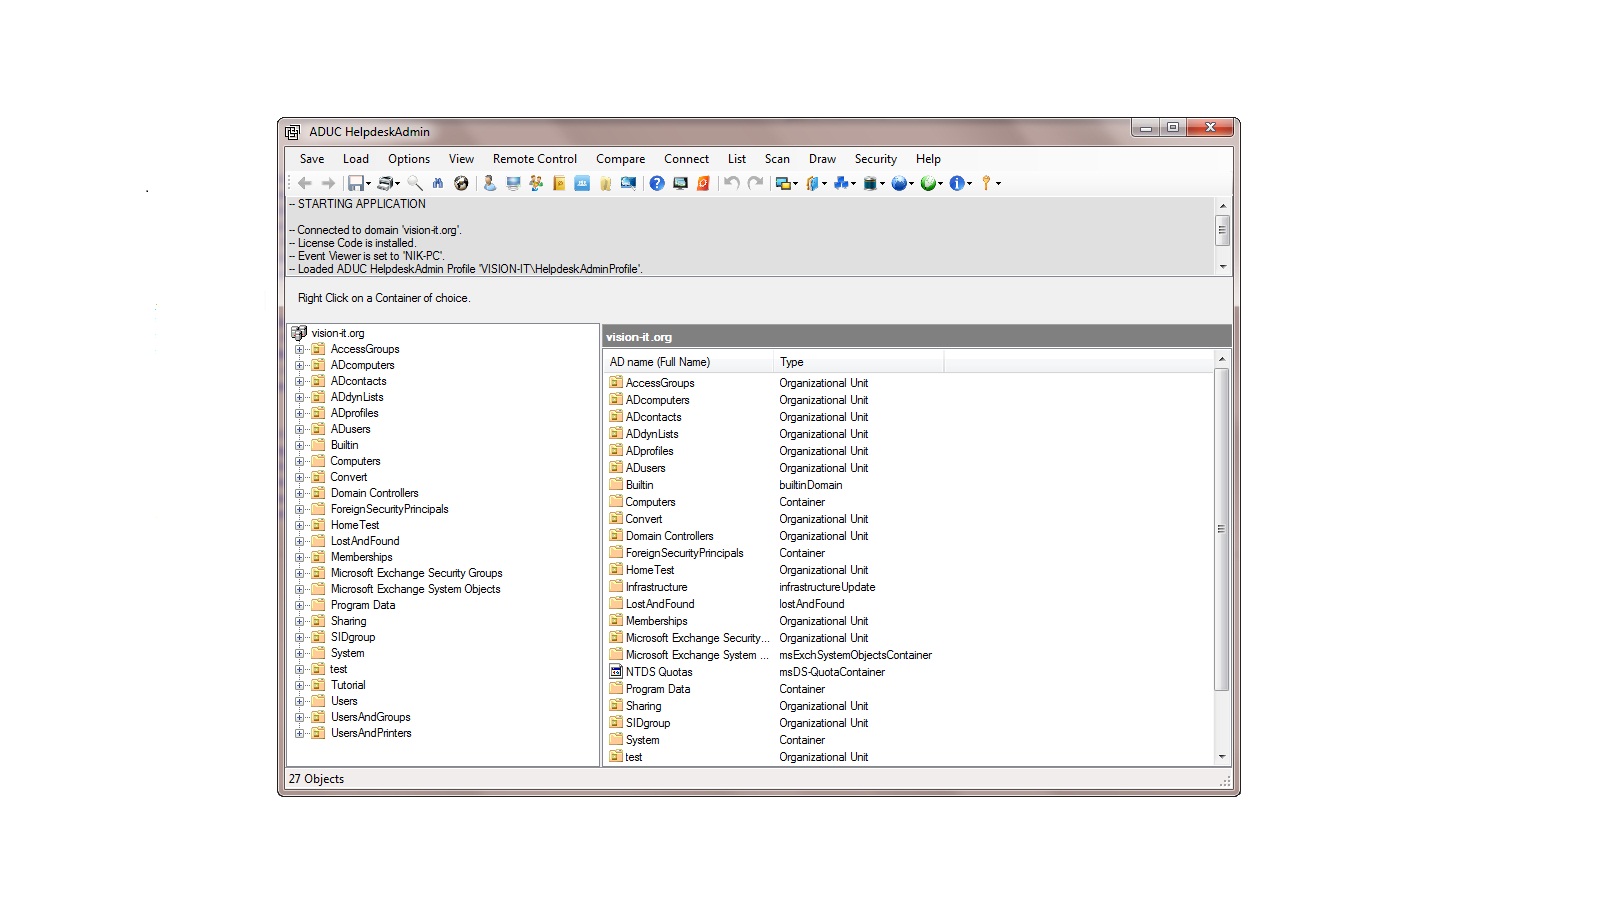 ADUC HelpdeskAdmin 3.0.3.1 software screenshot